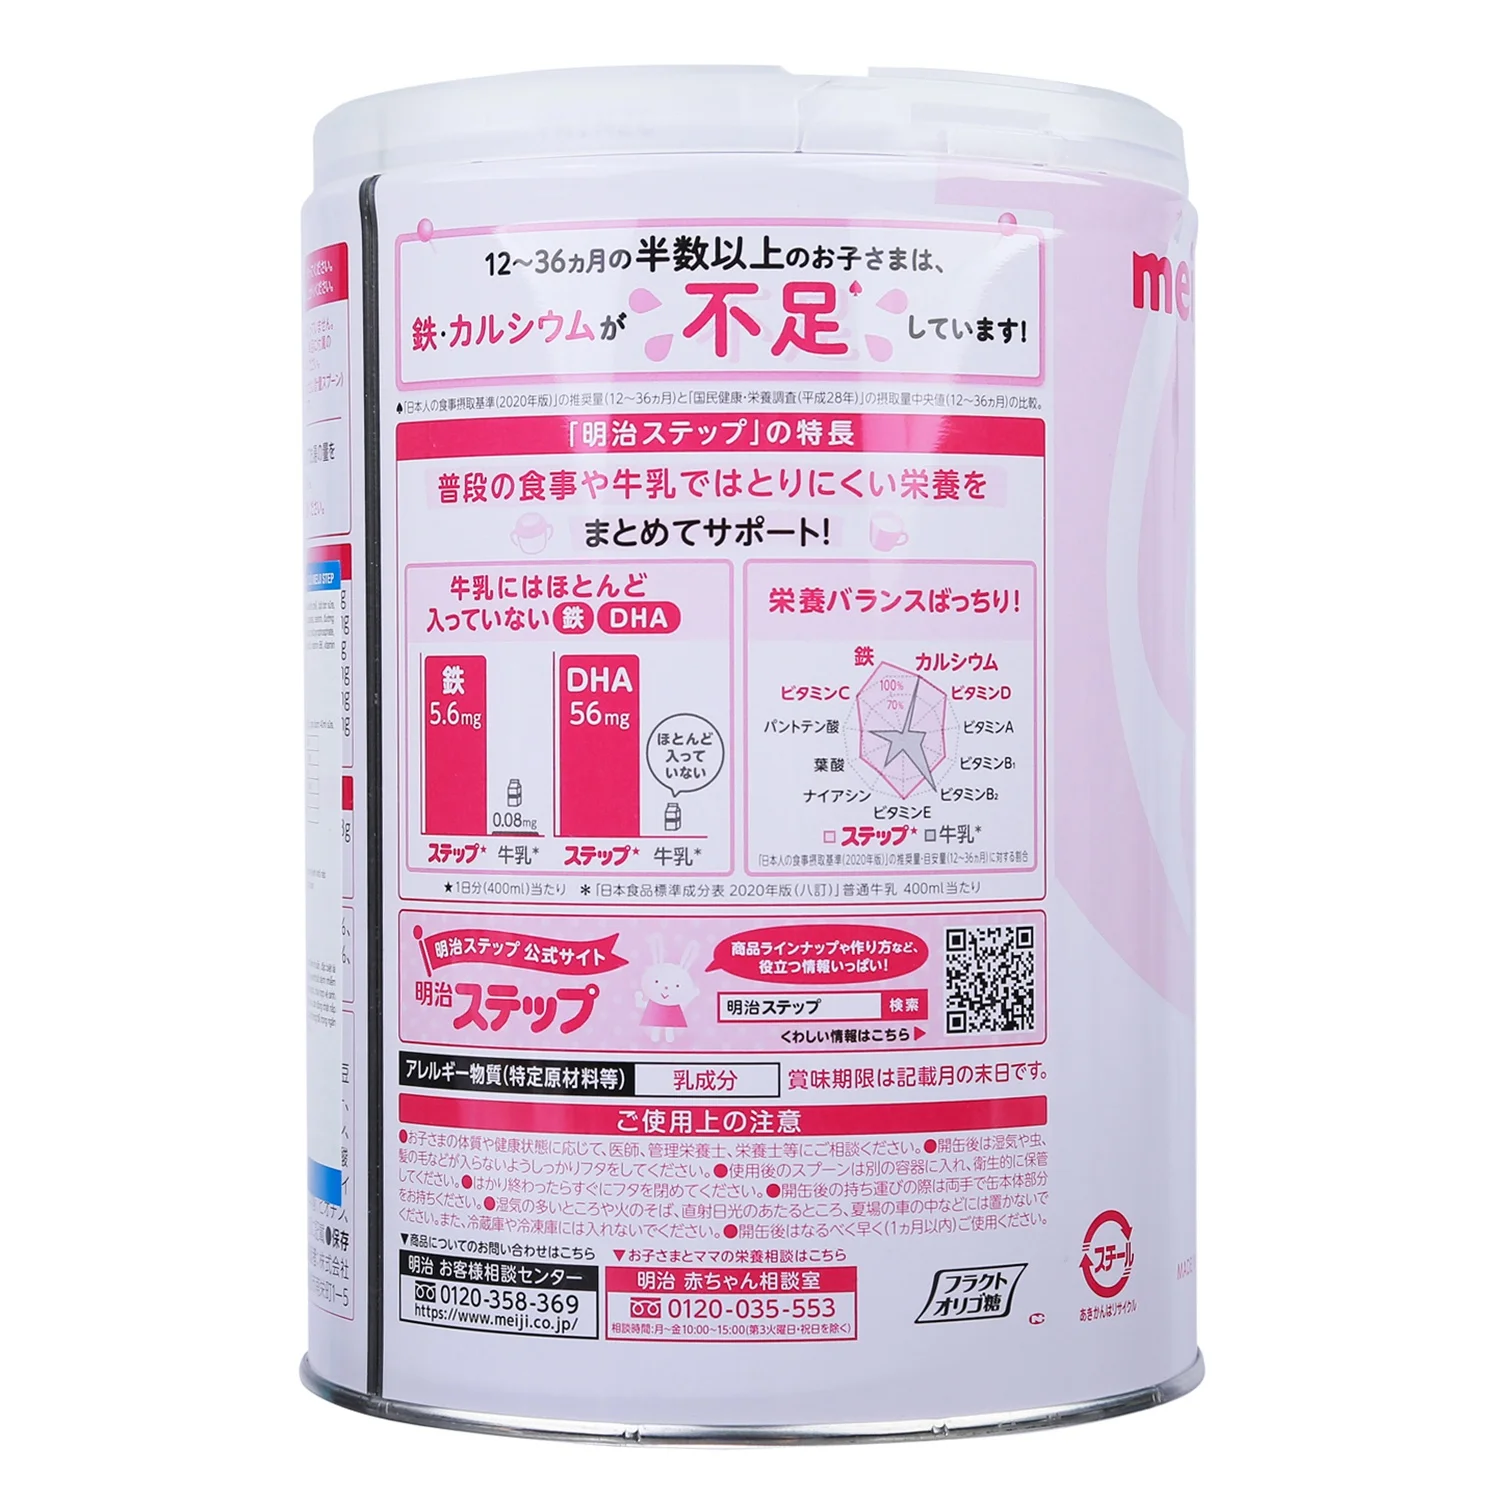 Sữa Meiji số 9 nội địa 800gr